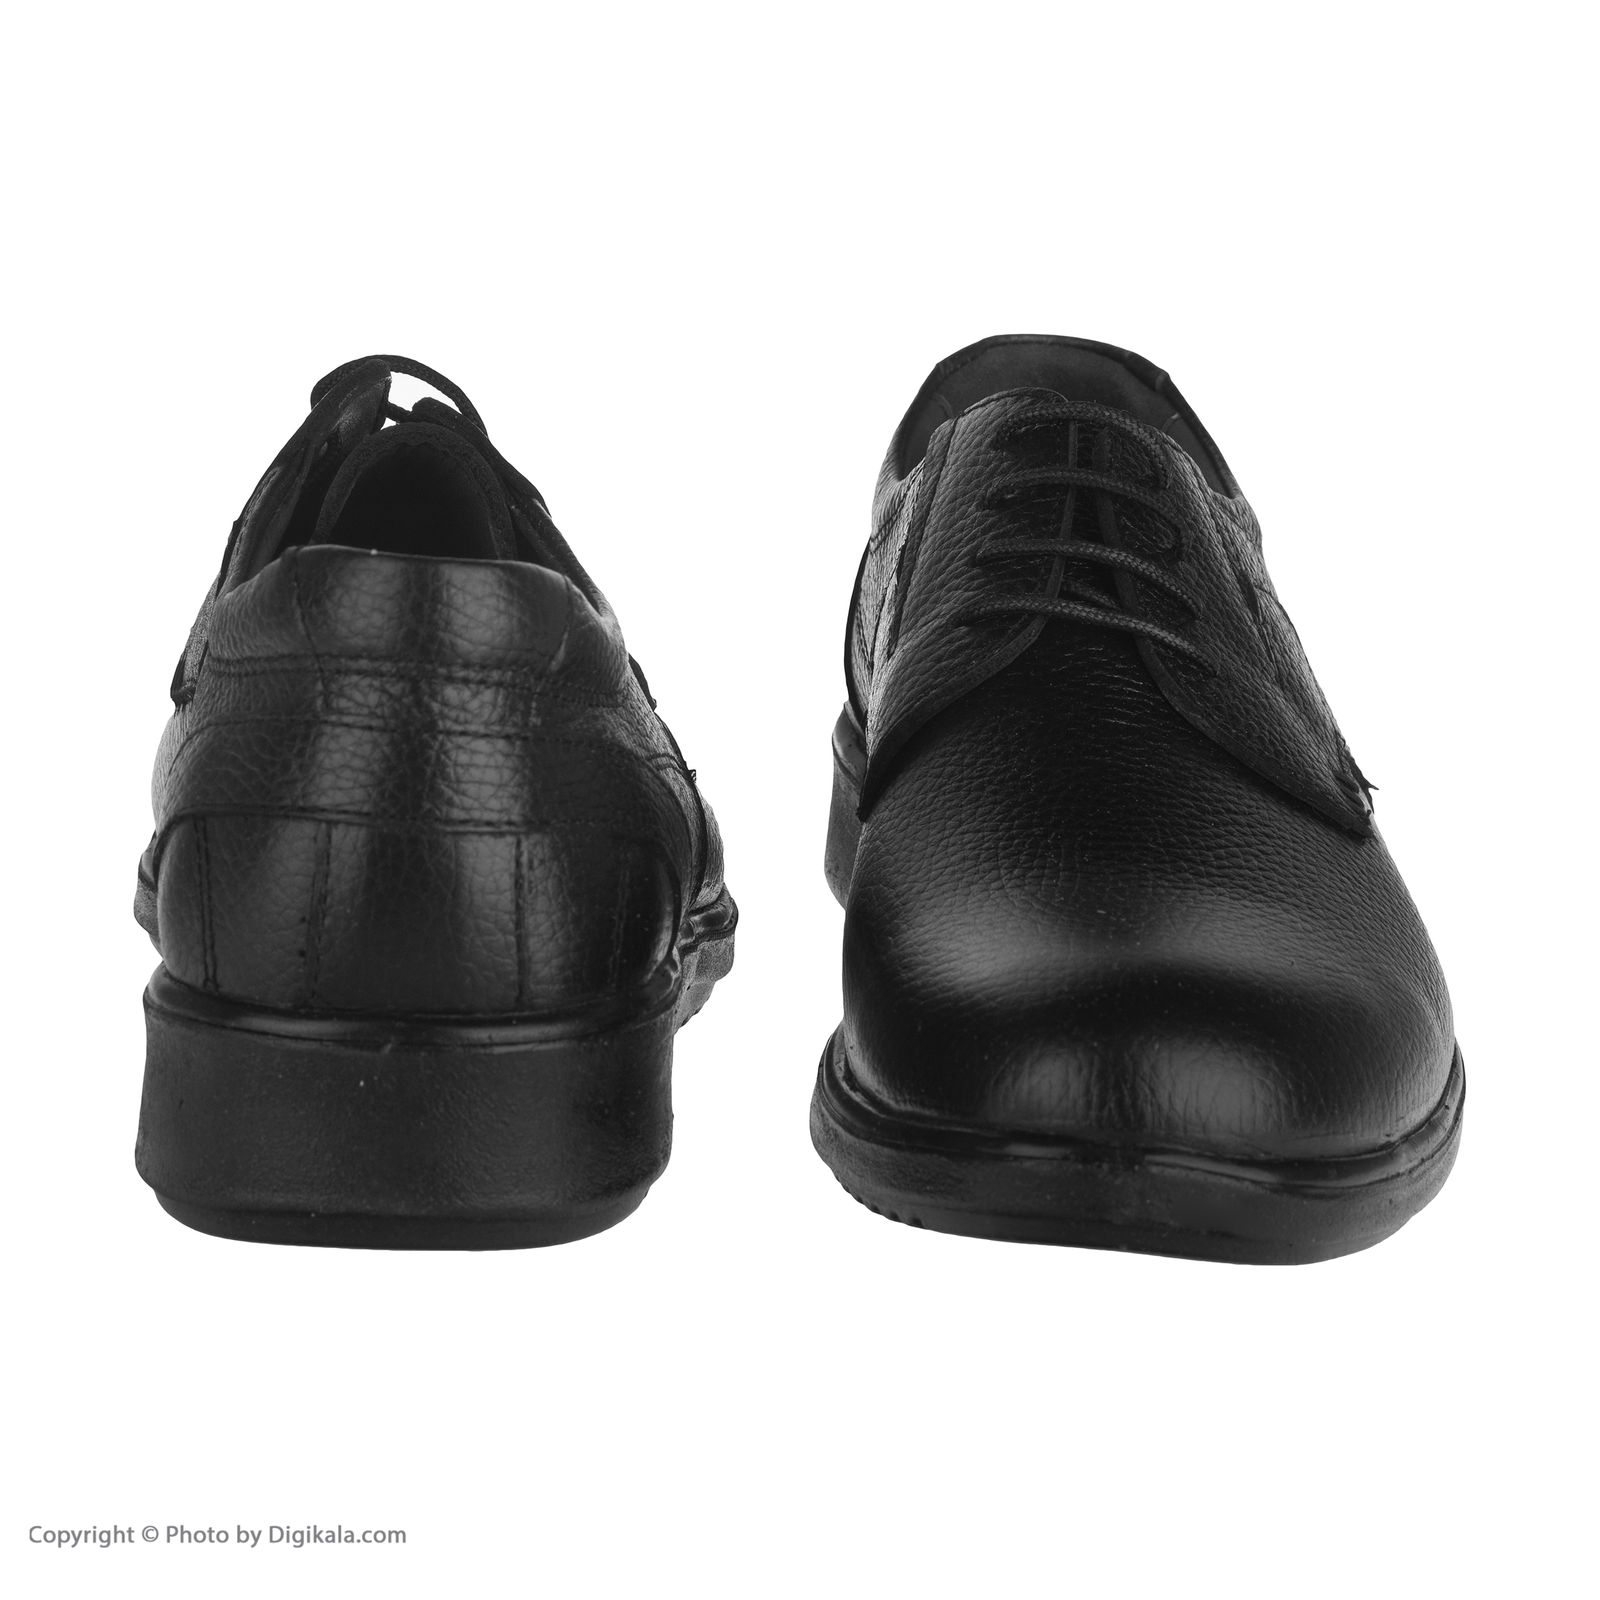  کفش روزمره مردانه ساتین مدل 7249b503101 -  - 4